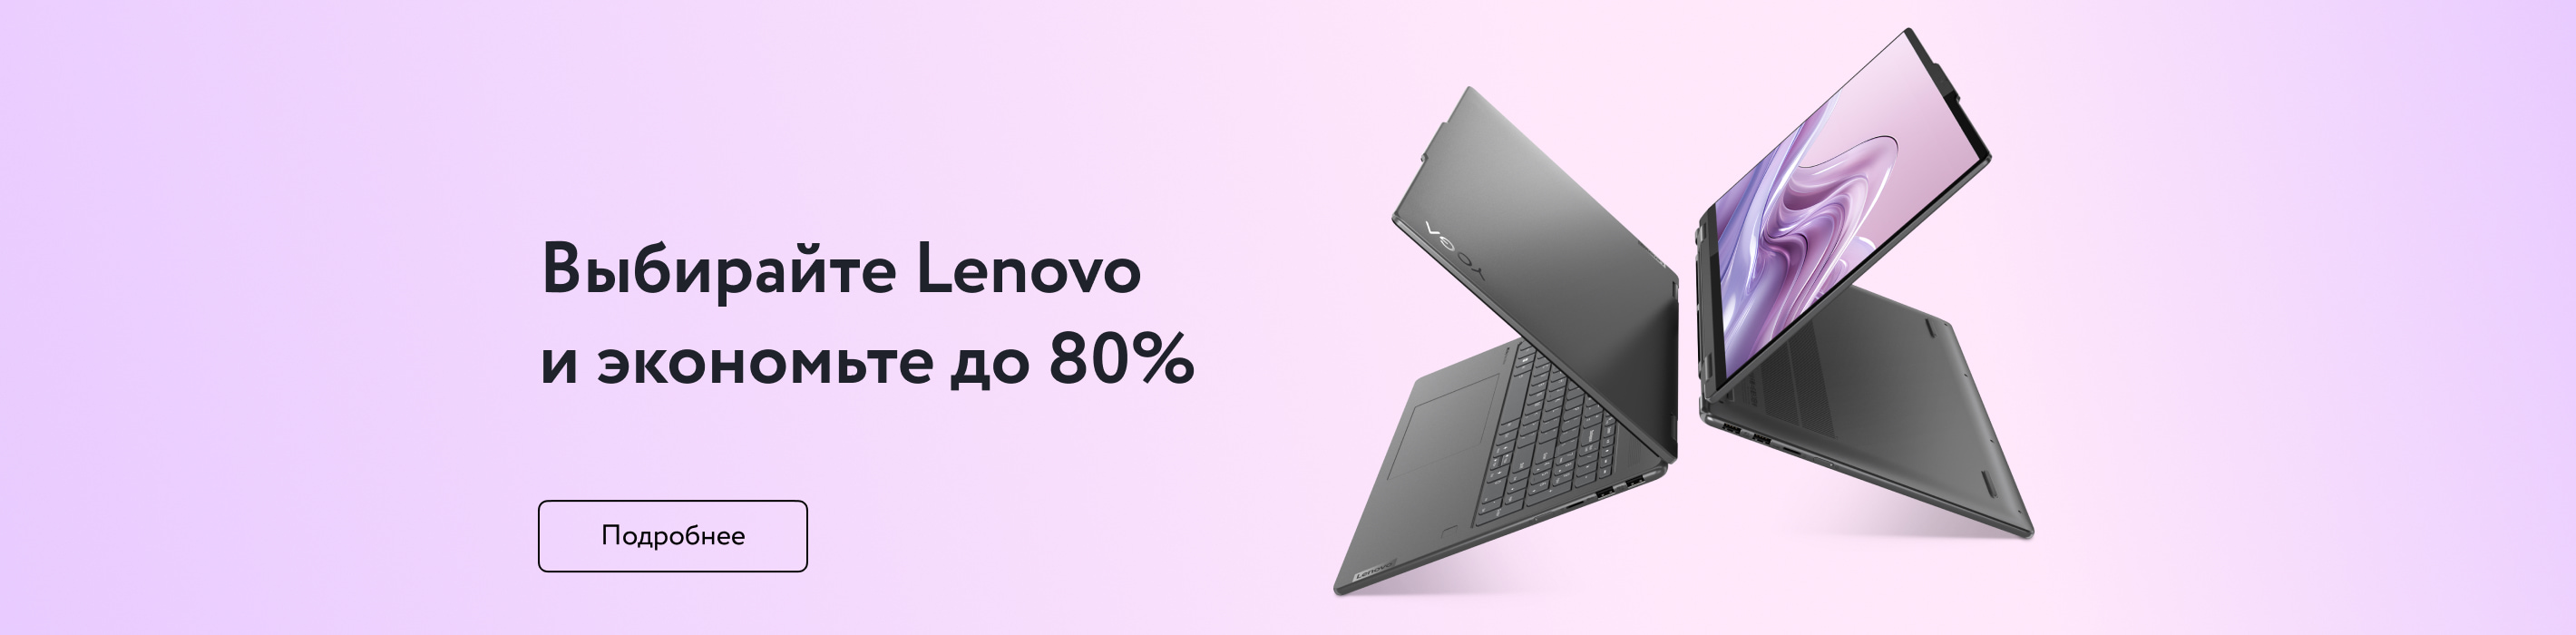 Выбирайте Lenovo и экономьте до 80%